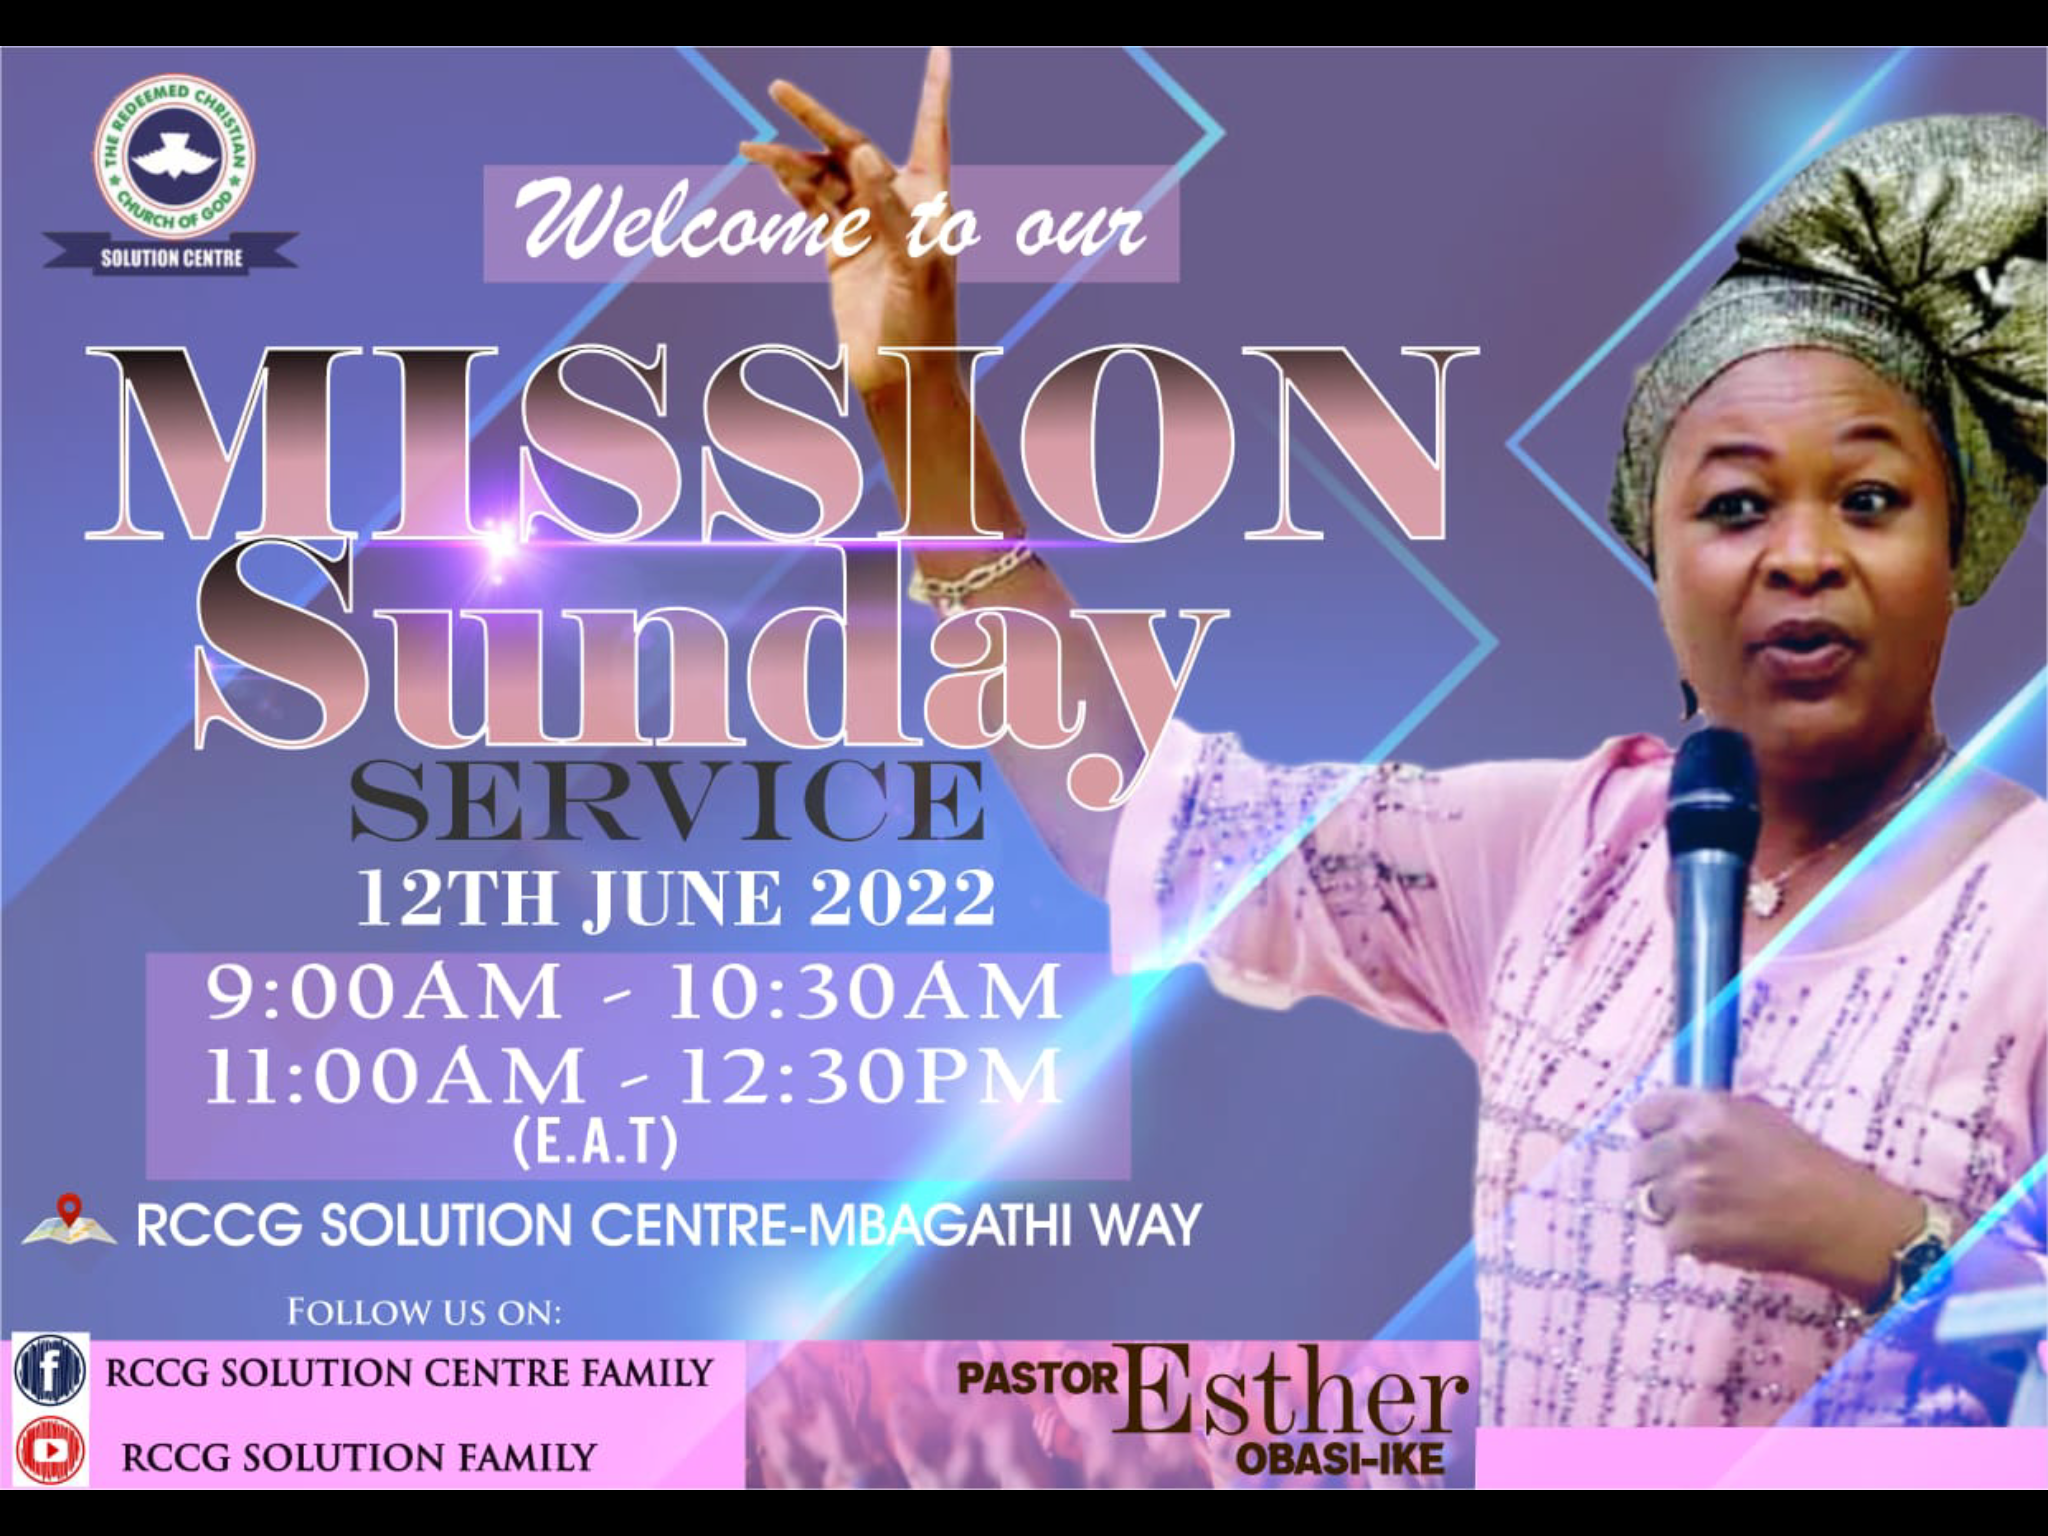 Mission Sunday service